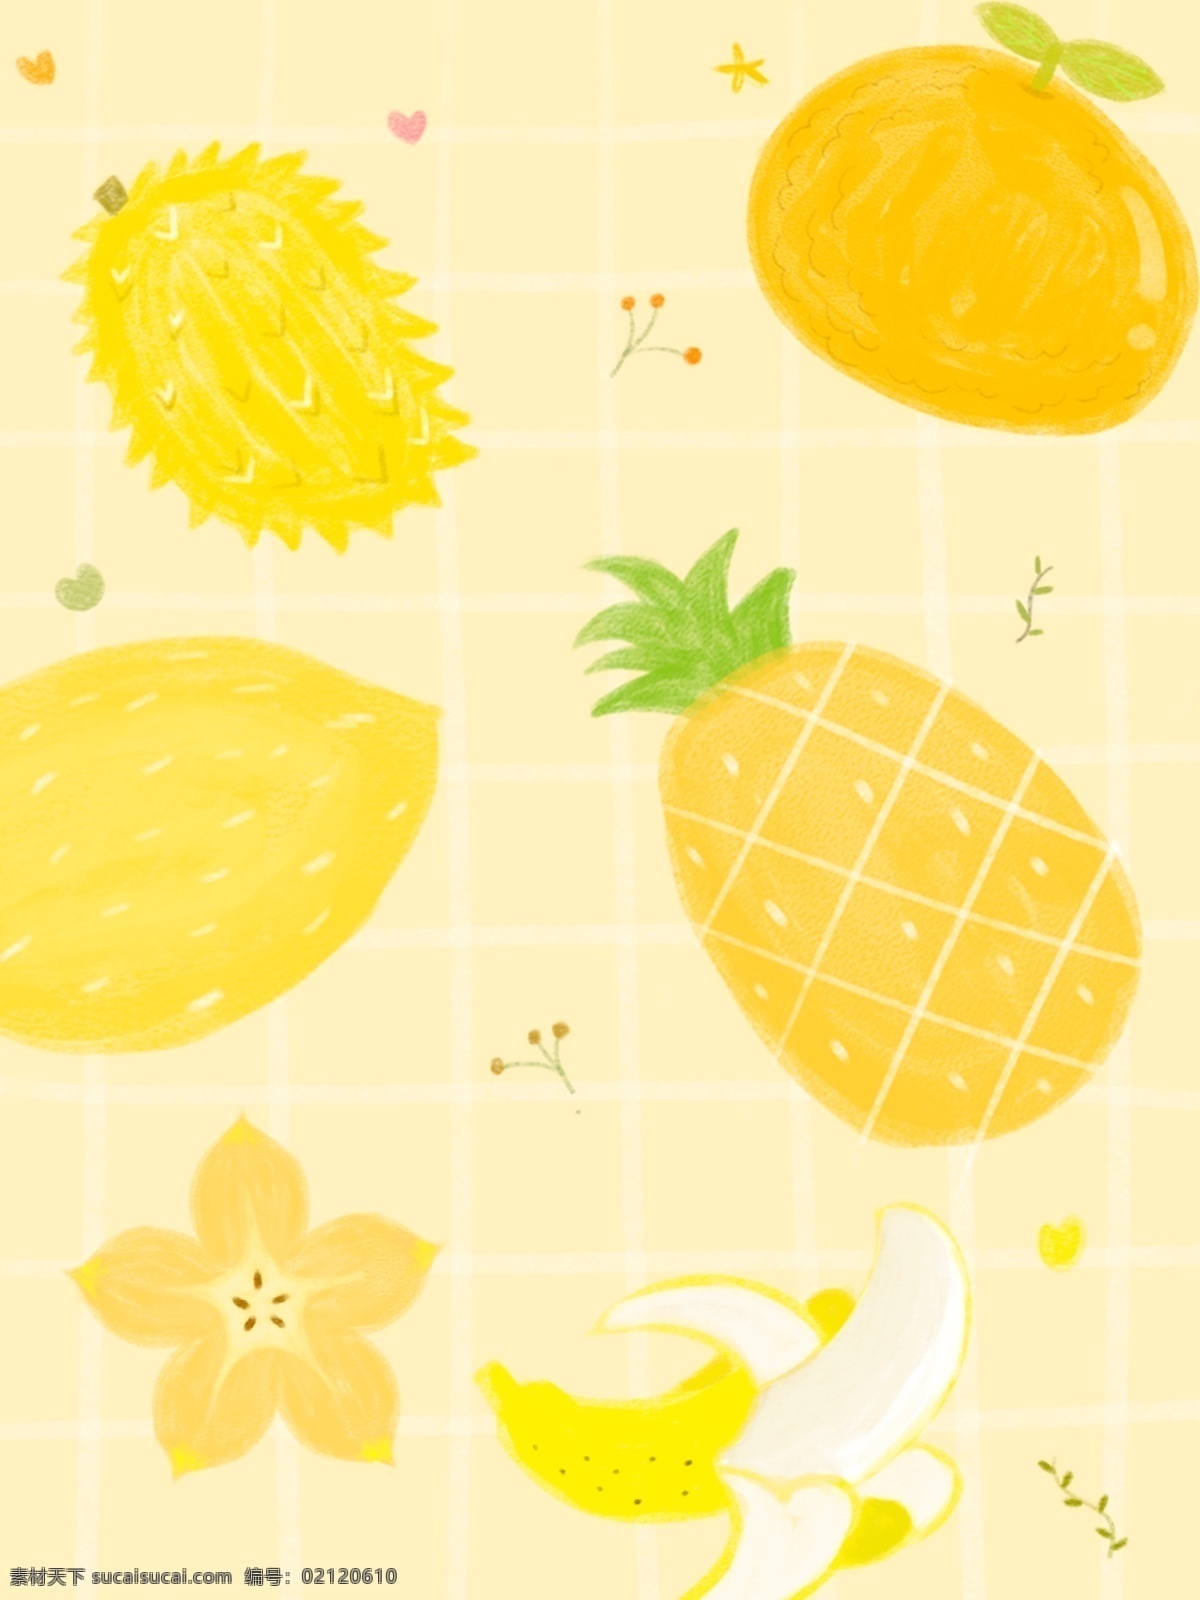 卡通 手绘 可爱 彩色 水果 广告 背景 黄色 柠檬 广告背景 粉色 橙色 橘子 榴莲 菠萝 杨桃 香蕉 碎花 格纹